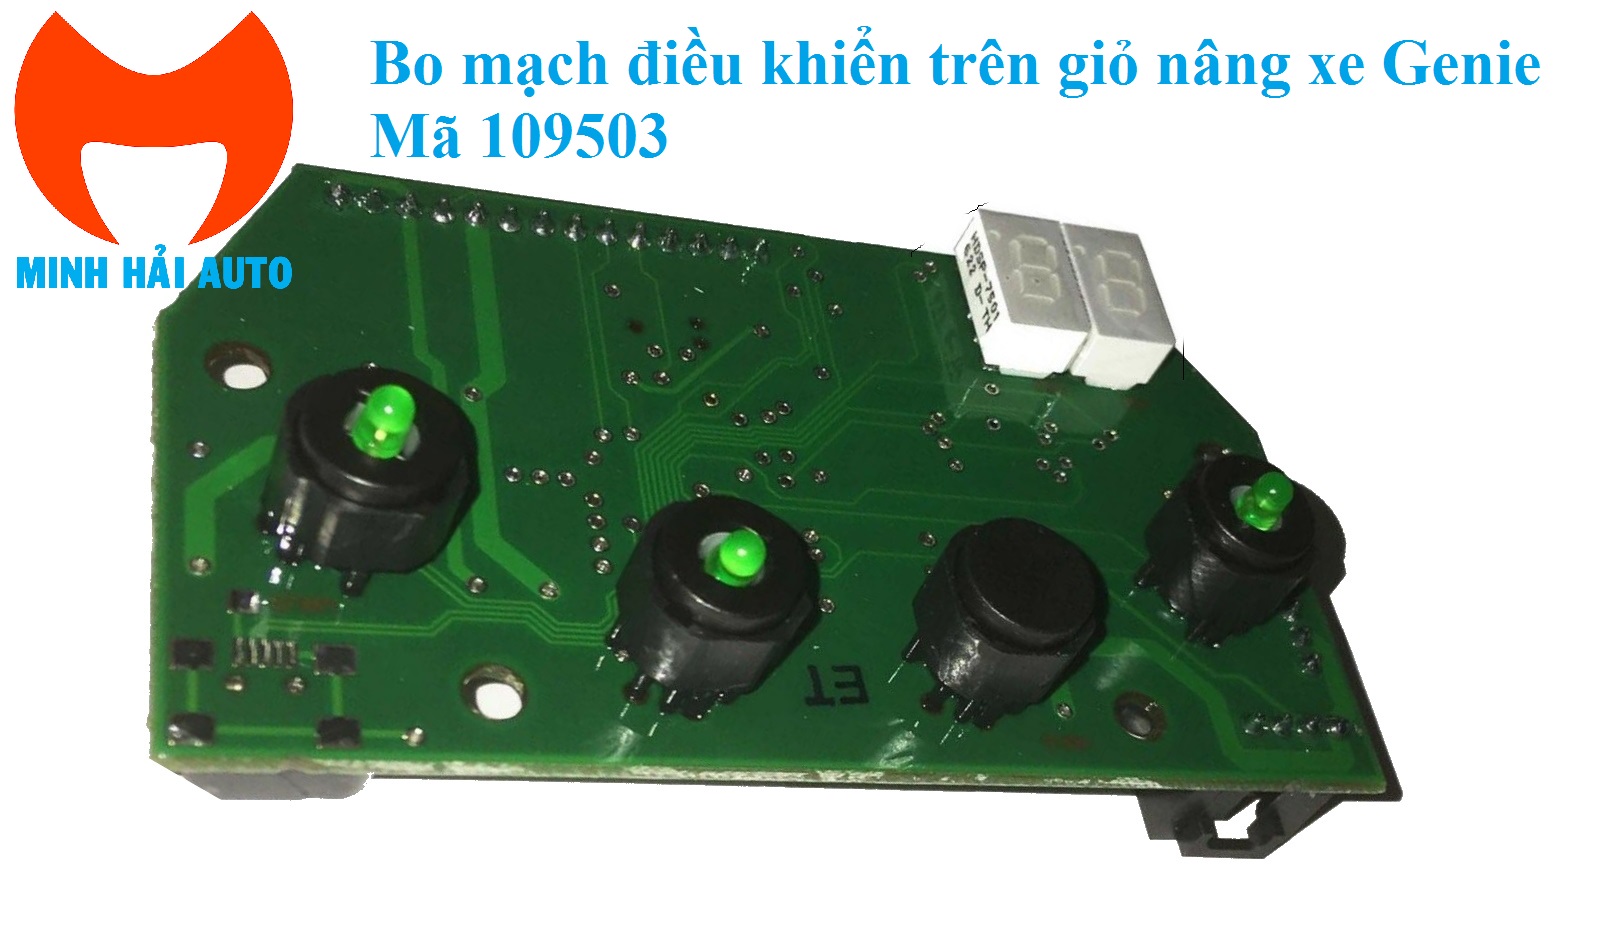 Bo mạch điều khiển trên giỏ mã GE- 109503